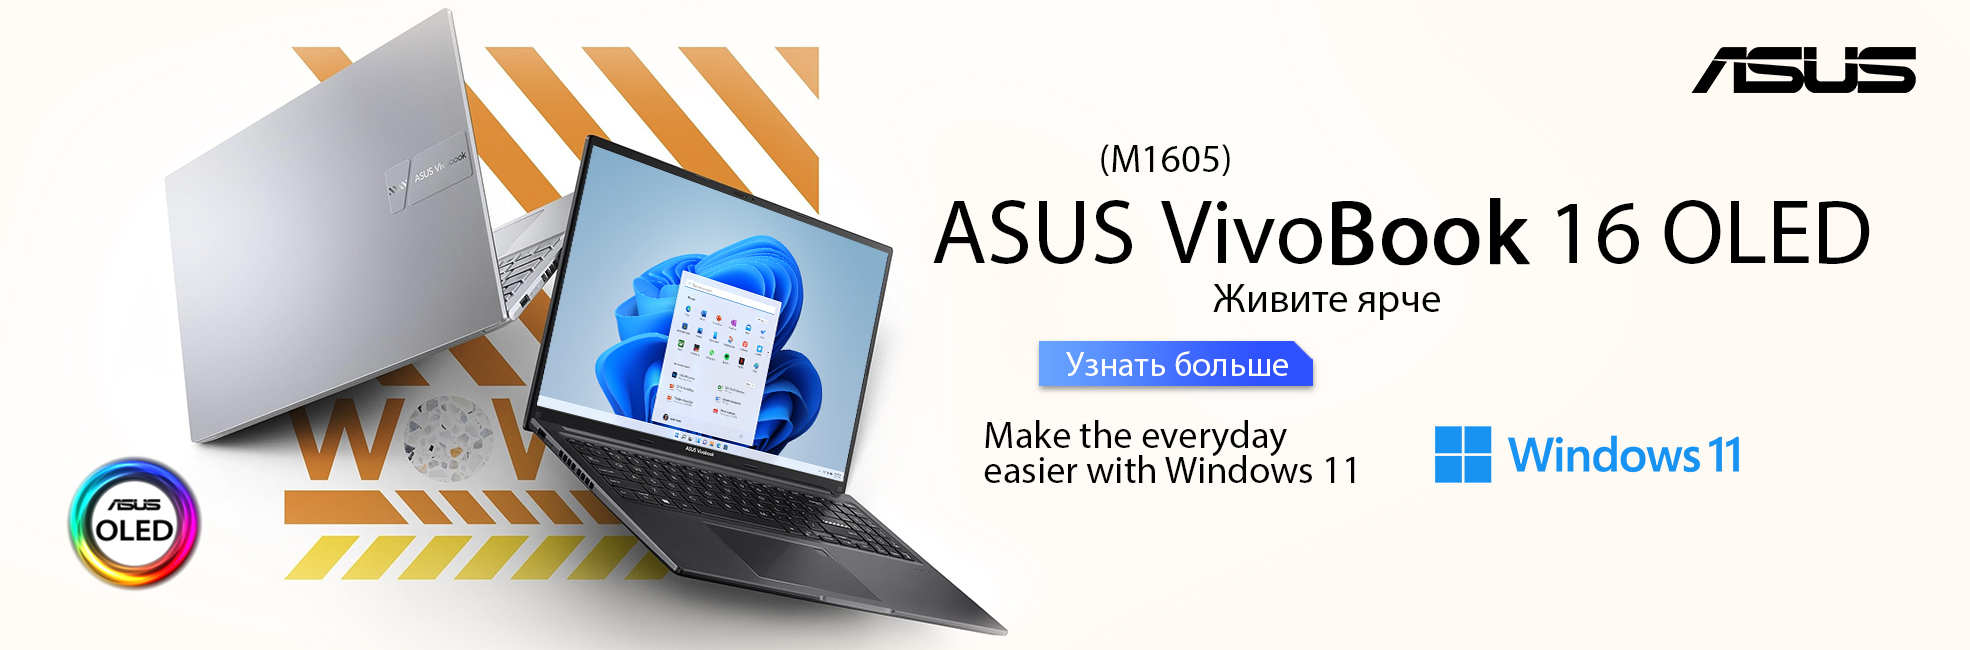 vivobook M1605 amd Asus VivoBook noutbuklari Asus VivoBook